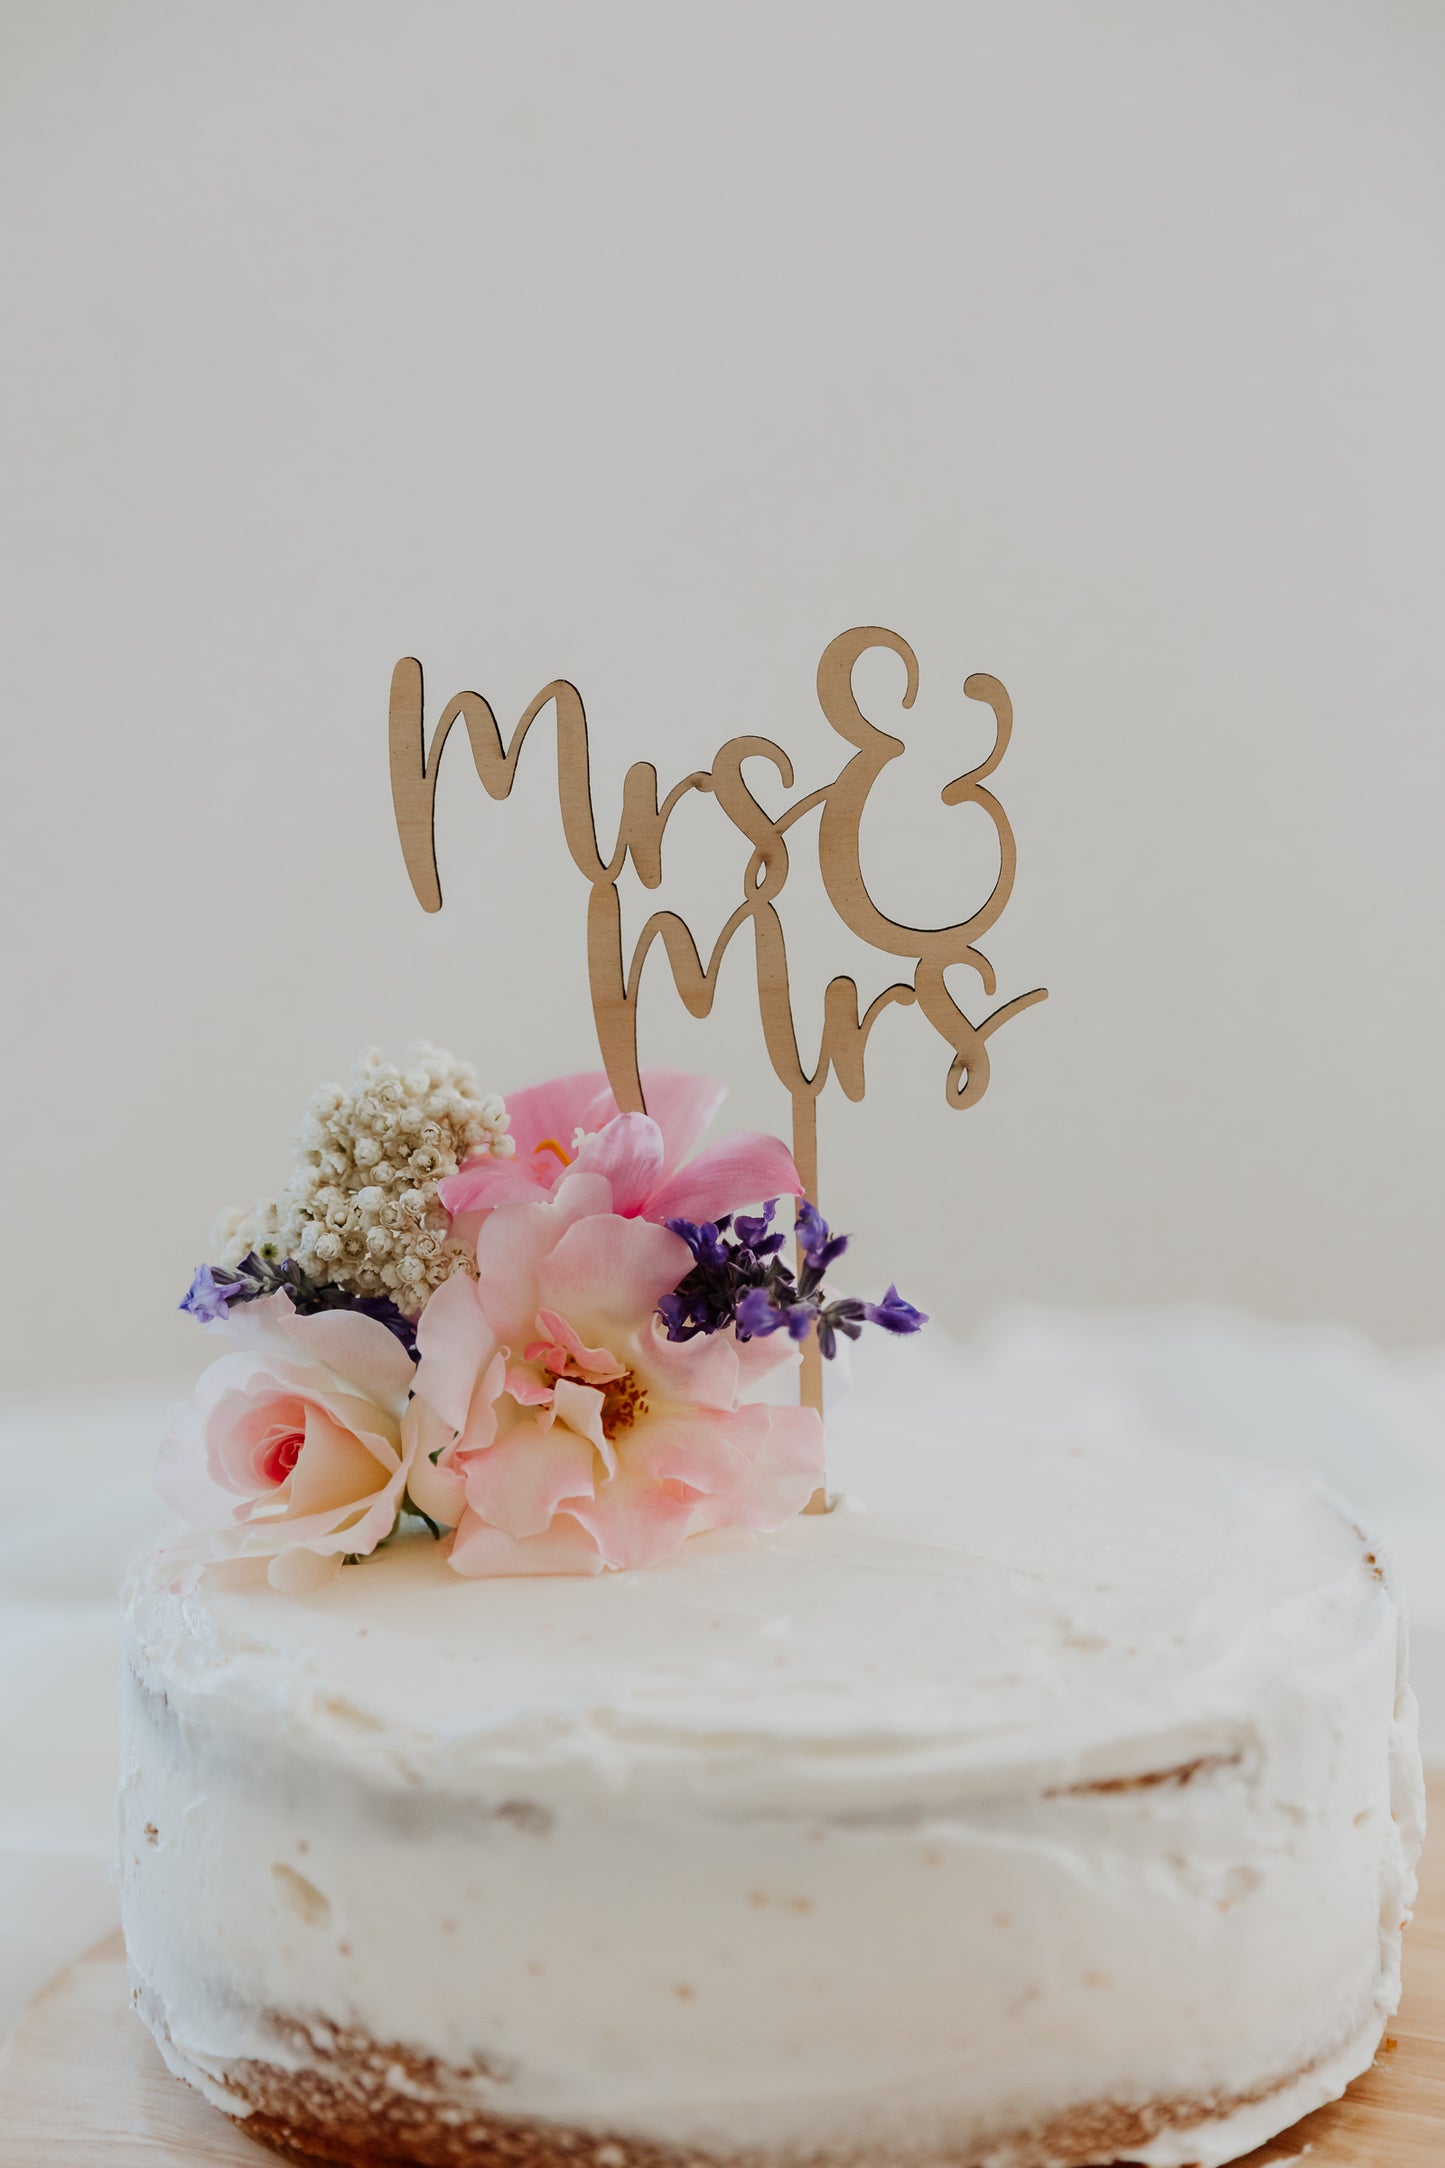 Mrs & Mrs Wedding Cake Topper